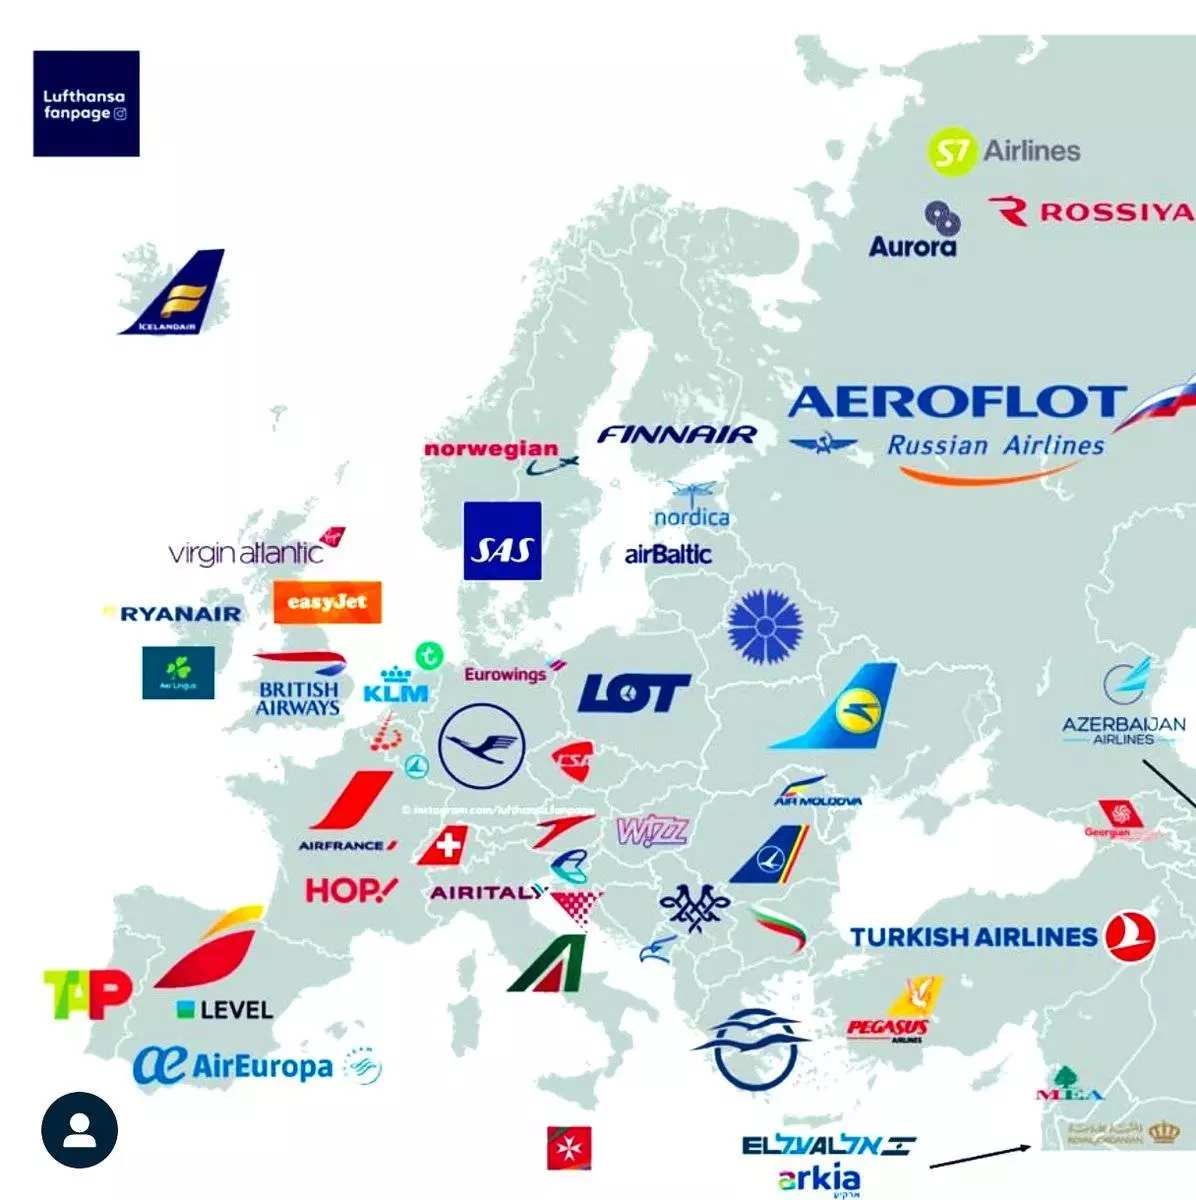 Рейтинг крупнейших авиакомпаний мира